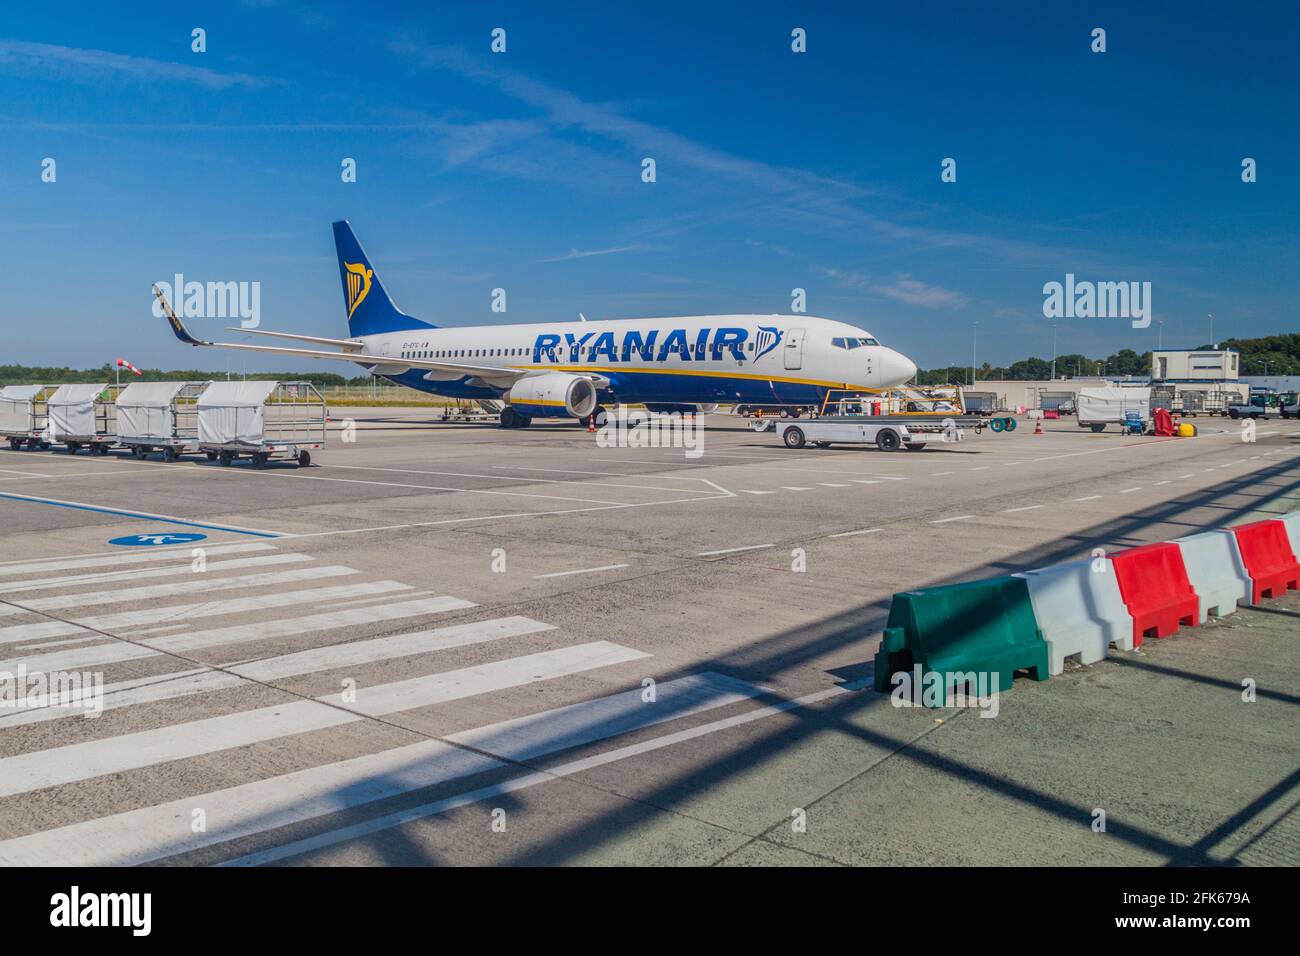 EINDHOVEN, NETHERLANDS - AUGUST 31, 2016: Ryanair airplane at Eindhoven airport Netherlands Stock Photo